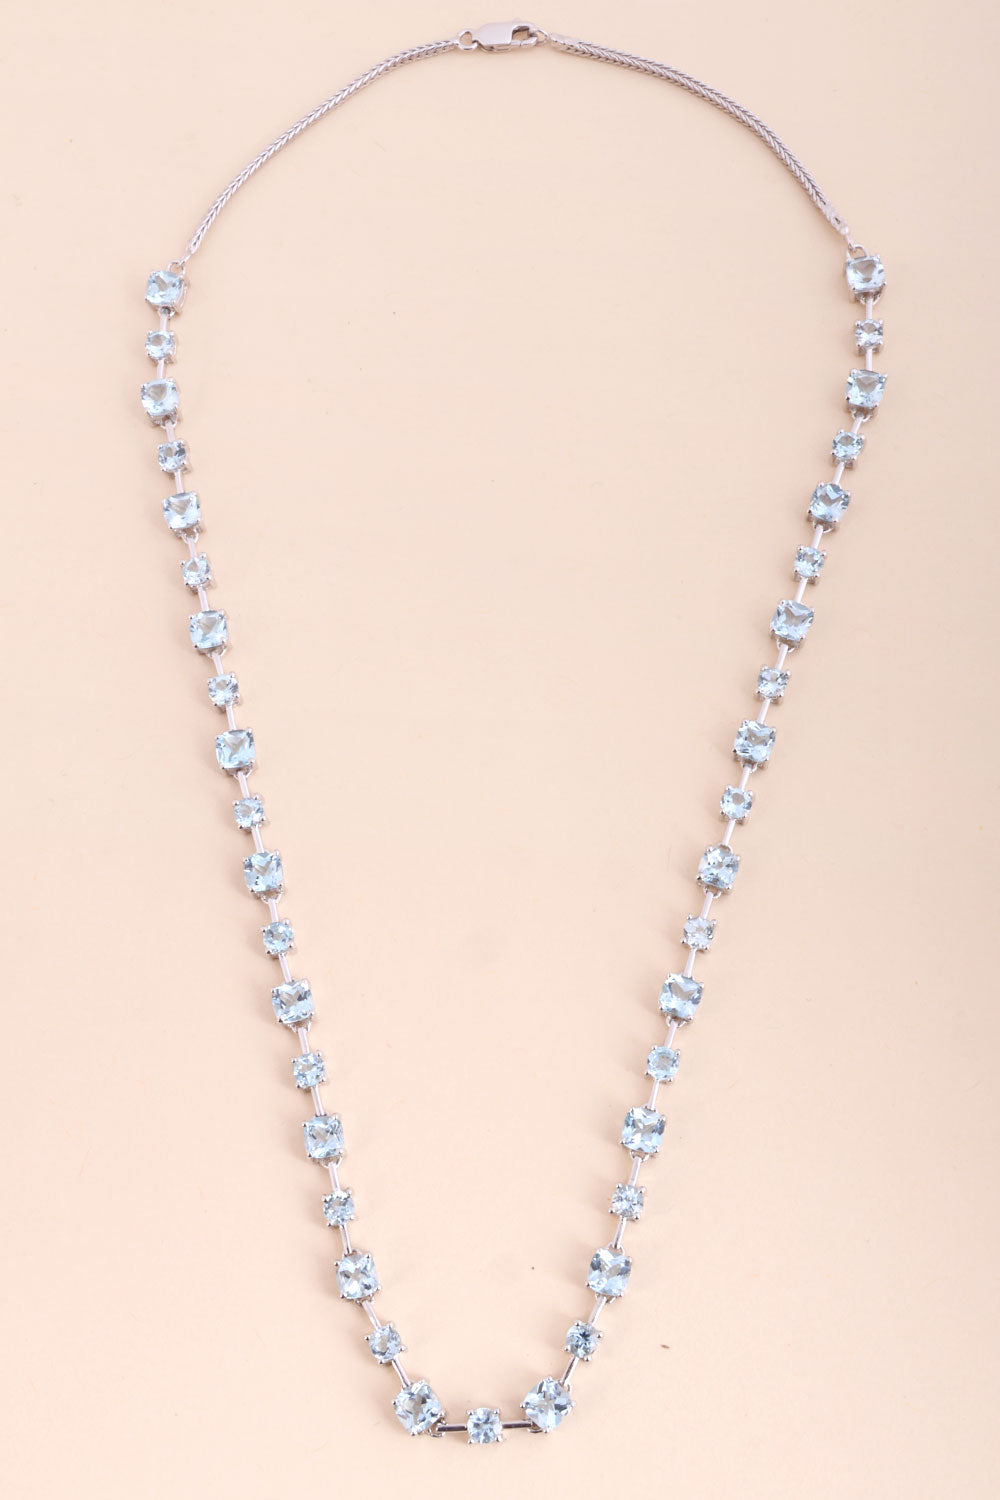 Blue Topaz Sterling Silver Necklace 10067133 - Avishya